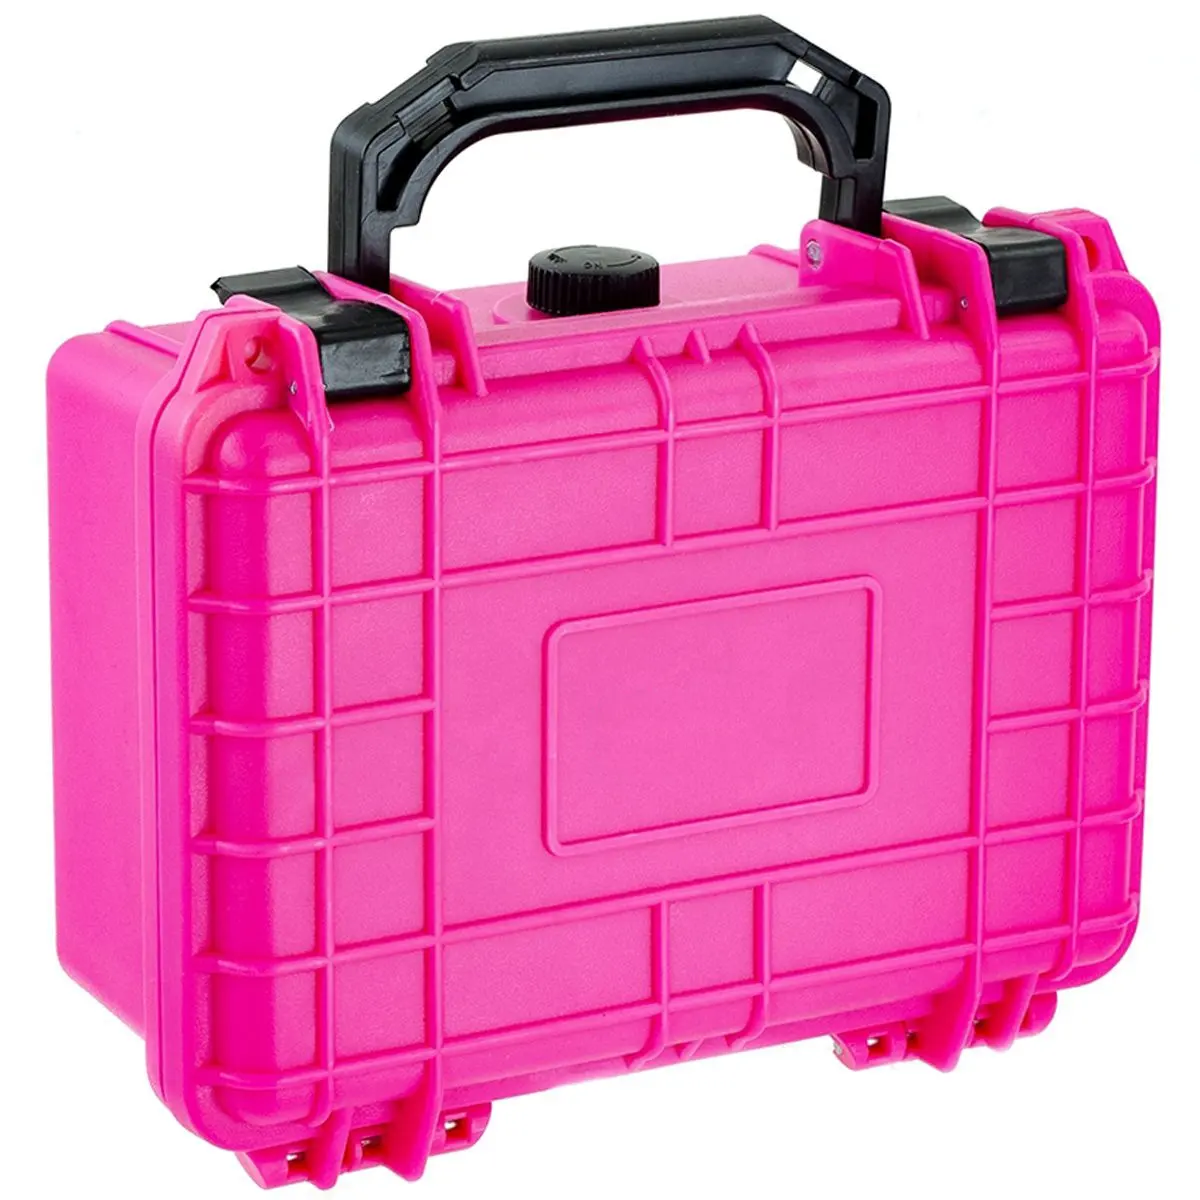 Farbe kunden spezifischer wasserdichter Hartplastik koffer Tragbarer Werkzeug koffer mit PP-Material